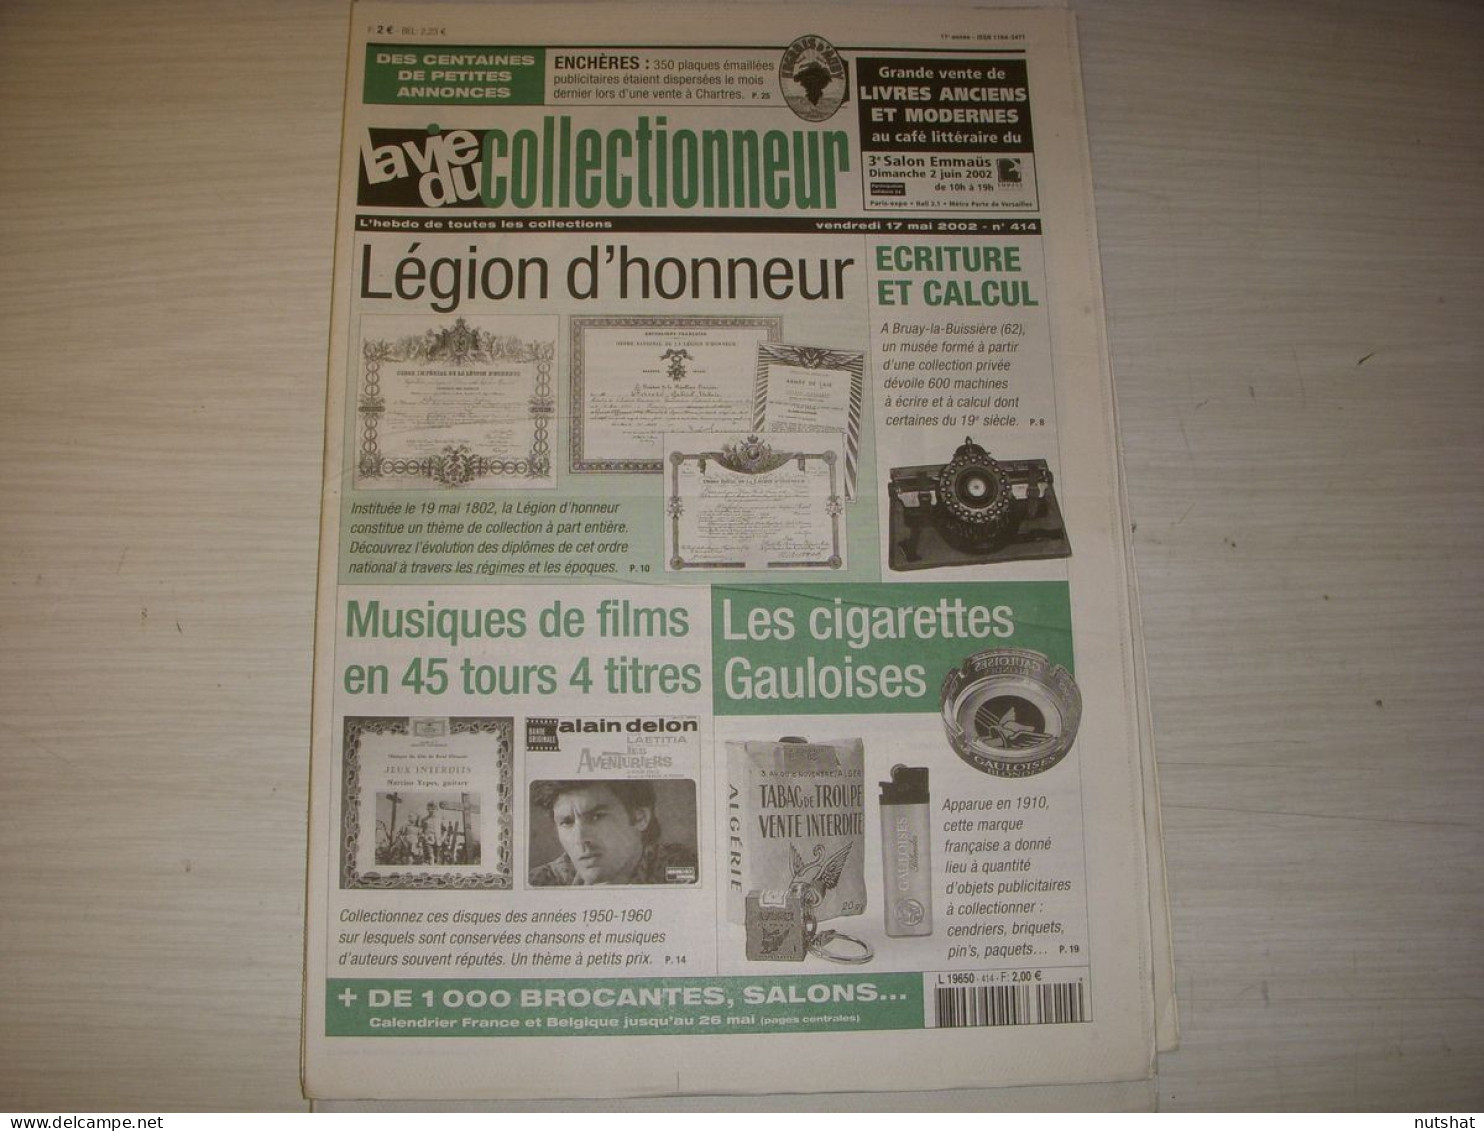 LVC VIE Du COLLECTIONNEUR 414 05.2002 CIGARETTE GAULOISES 45trs MUSIQUE De FILMS  - Brocantes & Collections